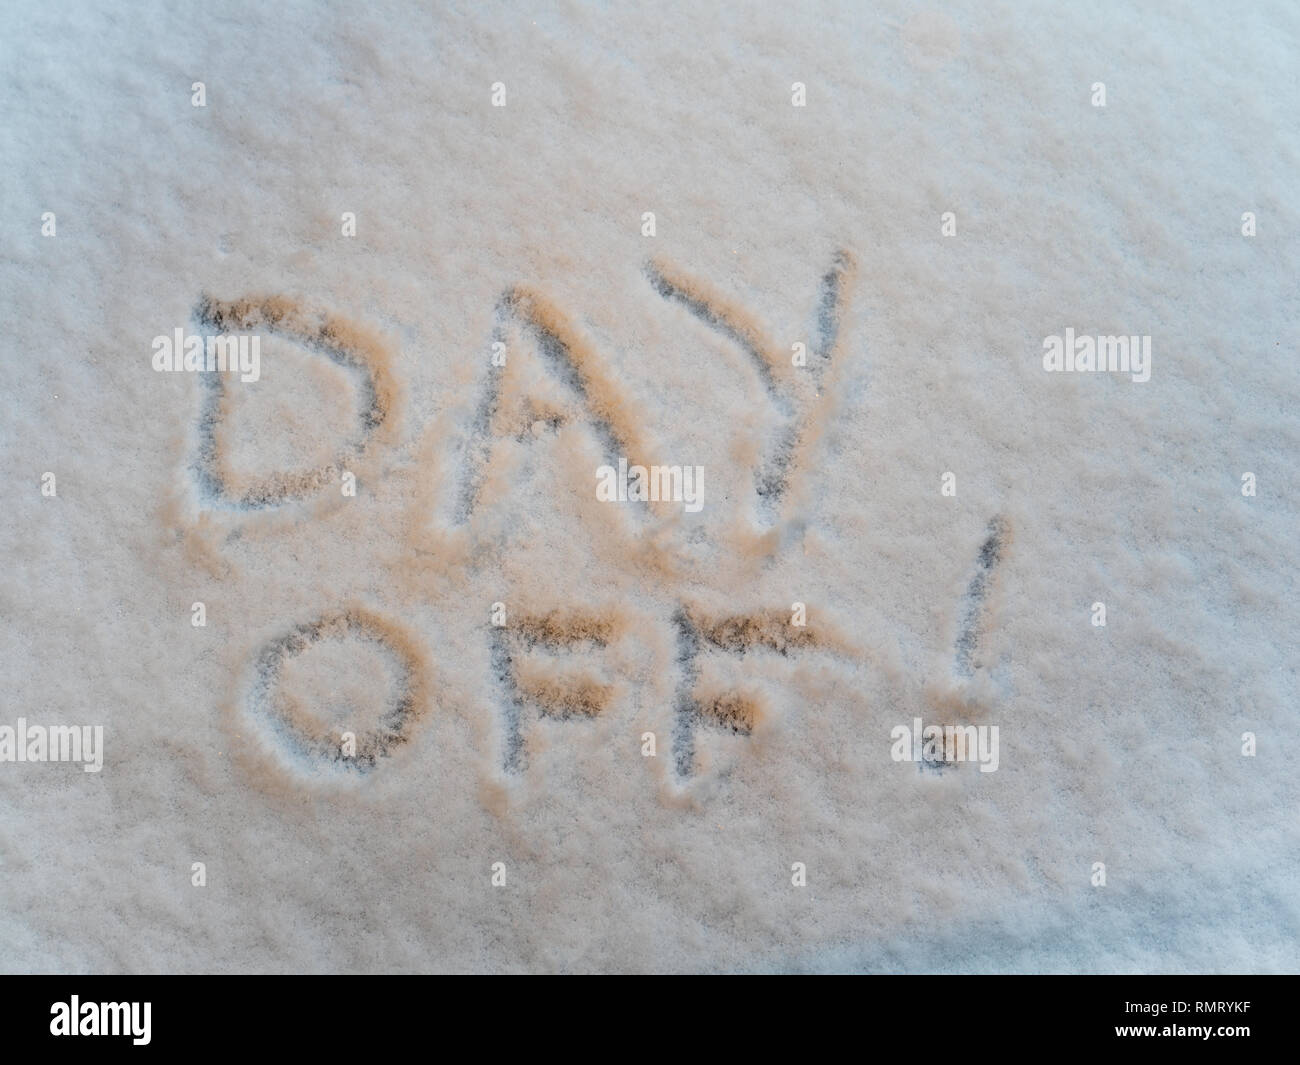 Giornata! Scritto in appena sceso polvere di neve. Foto Stock